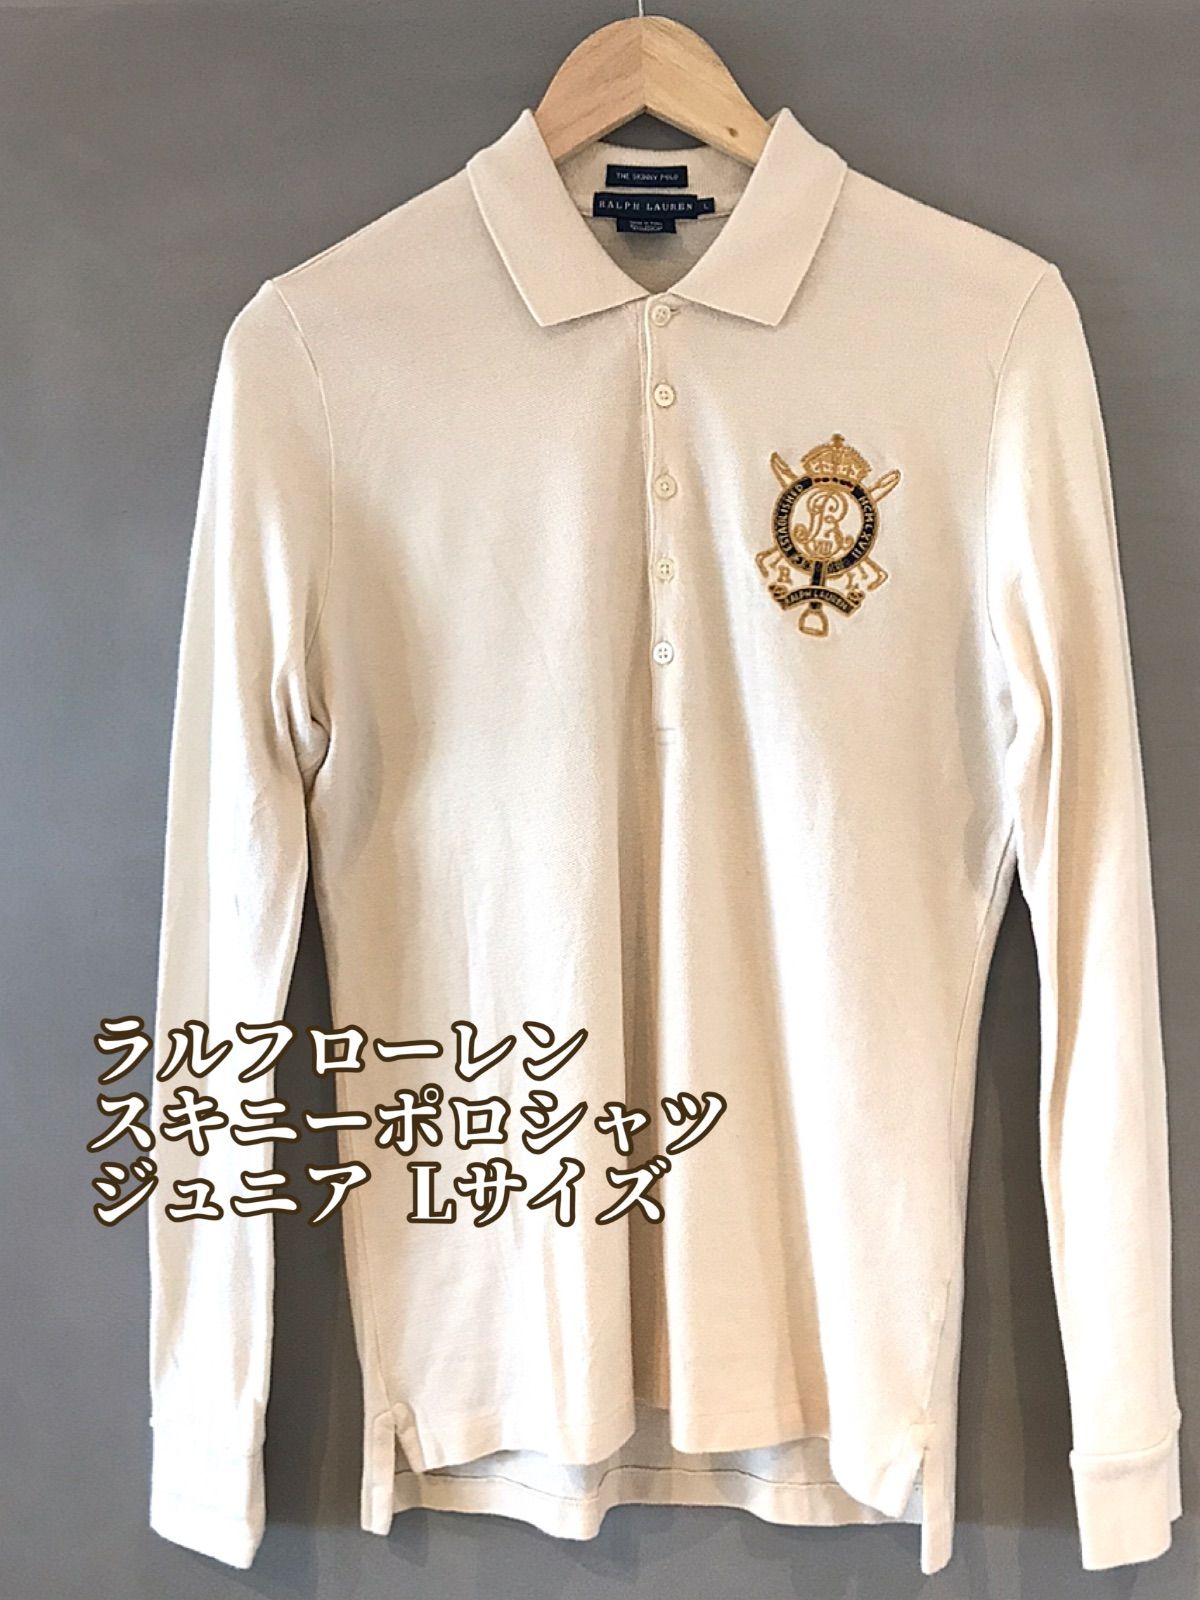 ポロラルフローレン ポロシャツ SKINNY FIT 新品タグ付 白 Lサイズ-